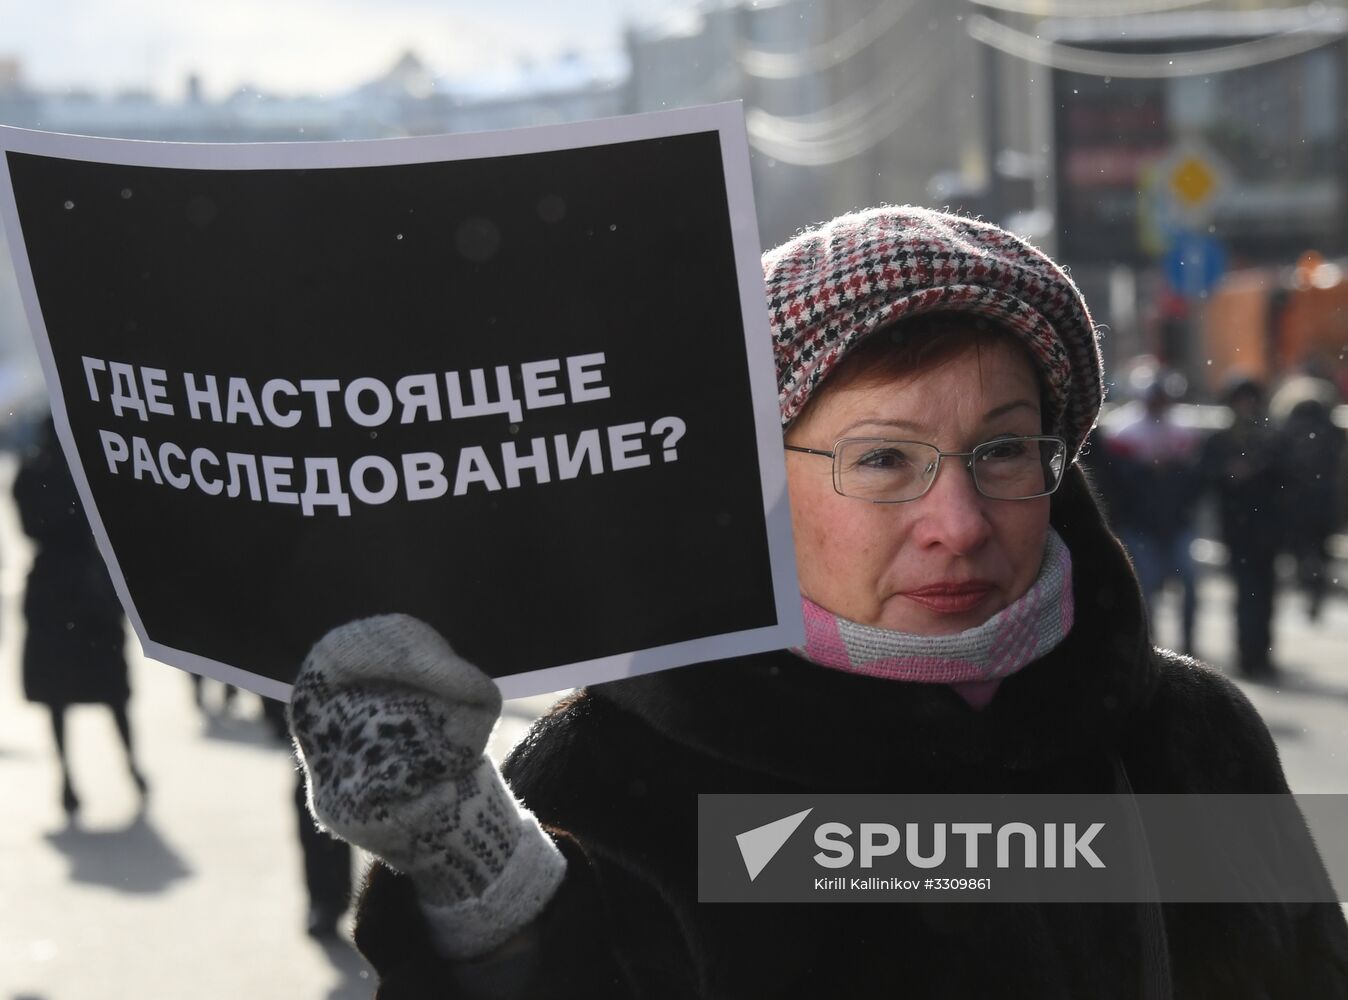 March to commemorate Boris Nemtsov